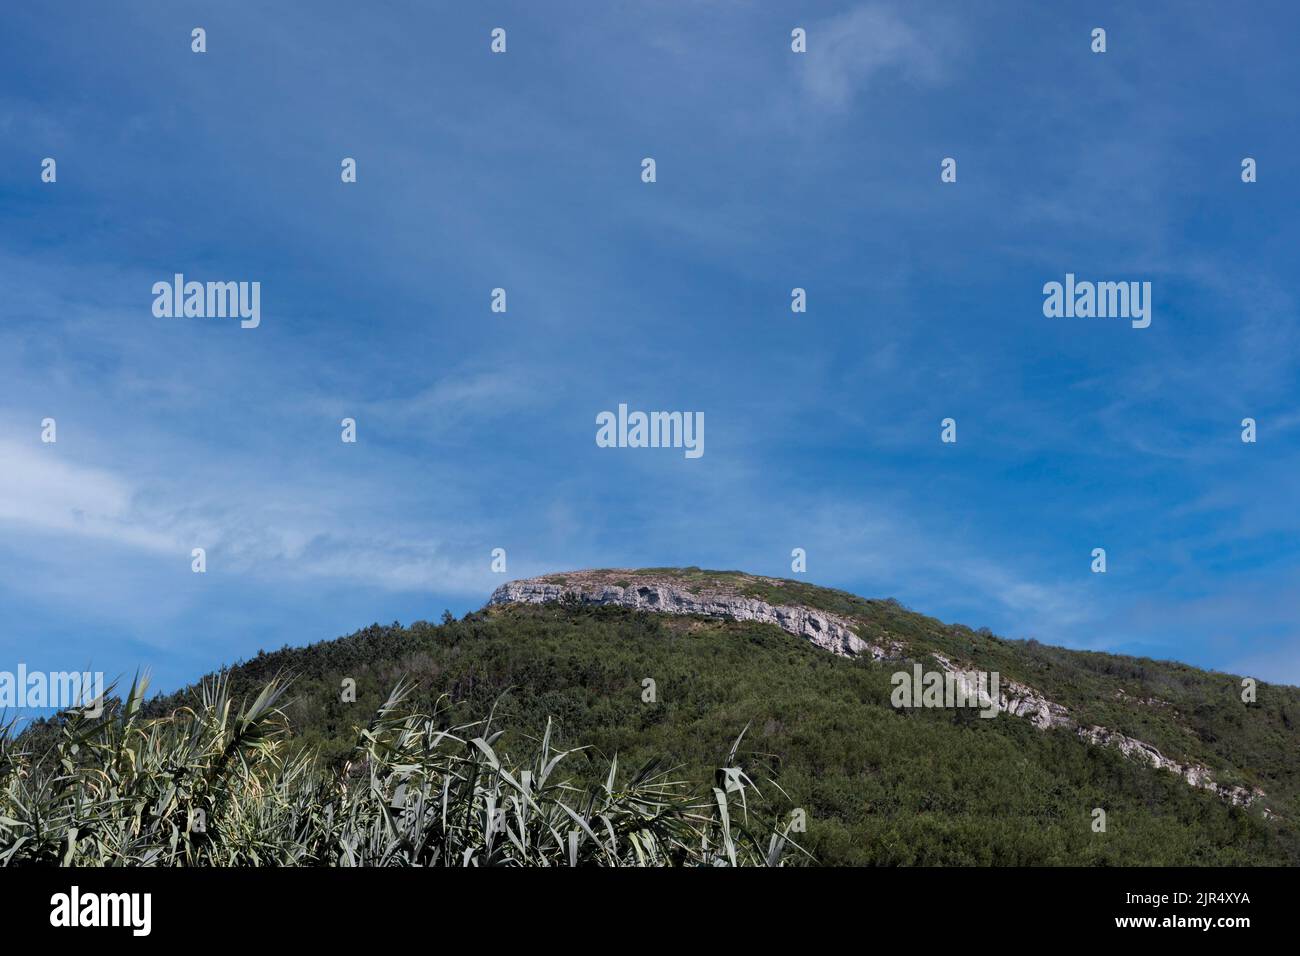 Verde collina coperta di vegetazione e alberi e cielo blu che mostra una linea di rocce calcaree stratificate nella montagna Serra da Boa Viagem Foto Stock